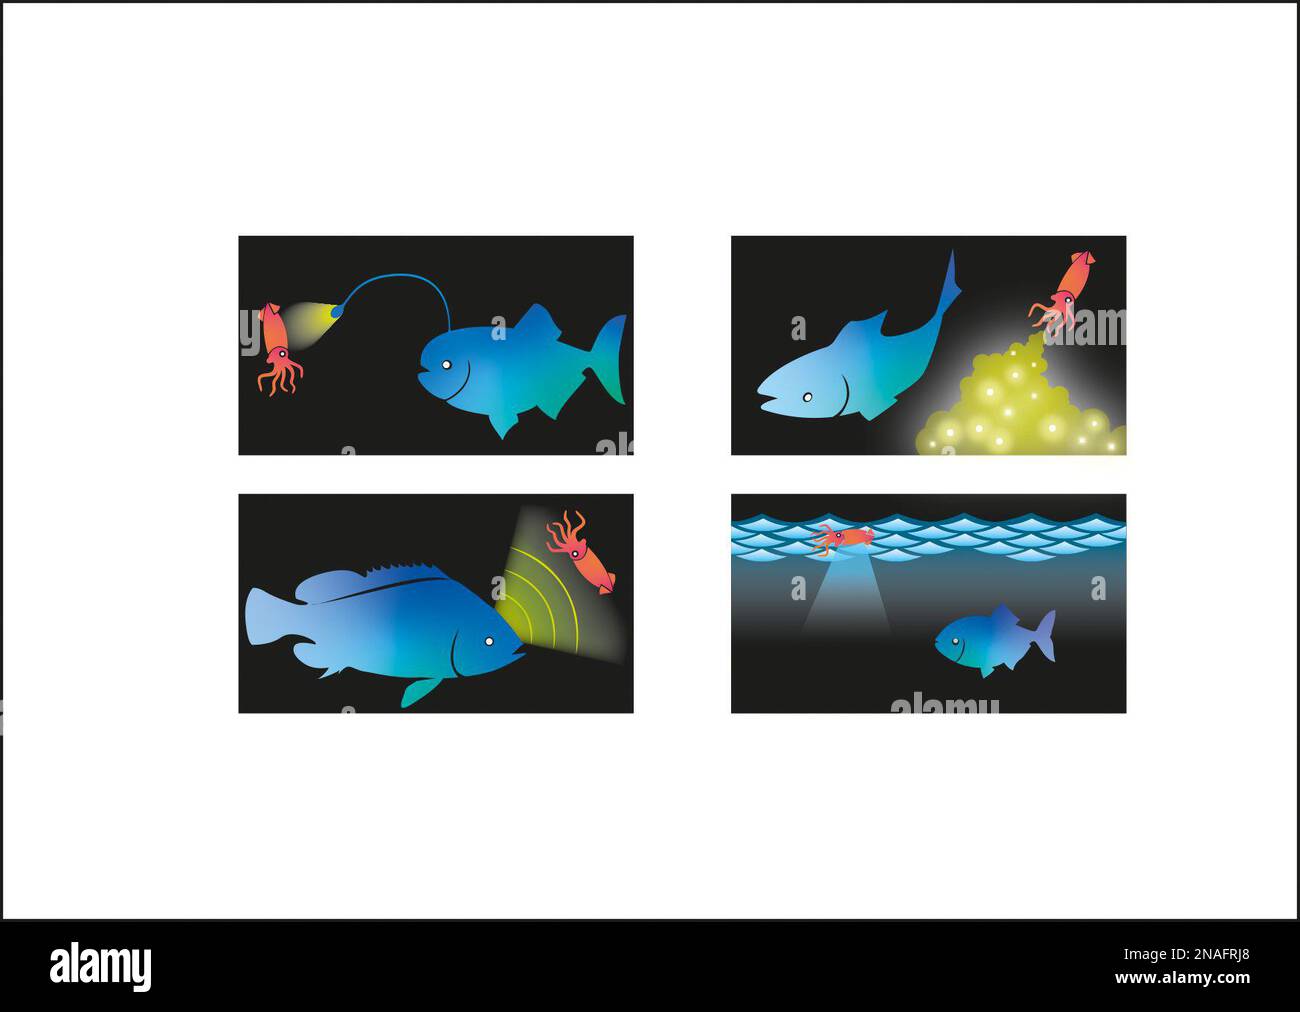 Illustration montrant les utilisations de la bioluminescence chez les animaux marins Banque D'Images